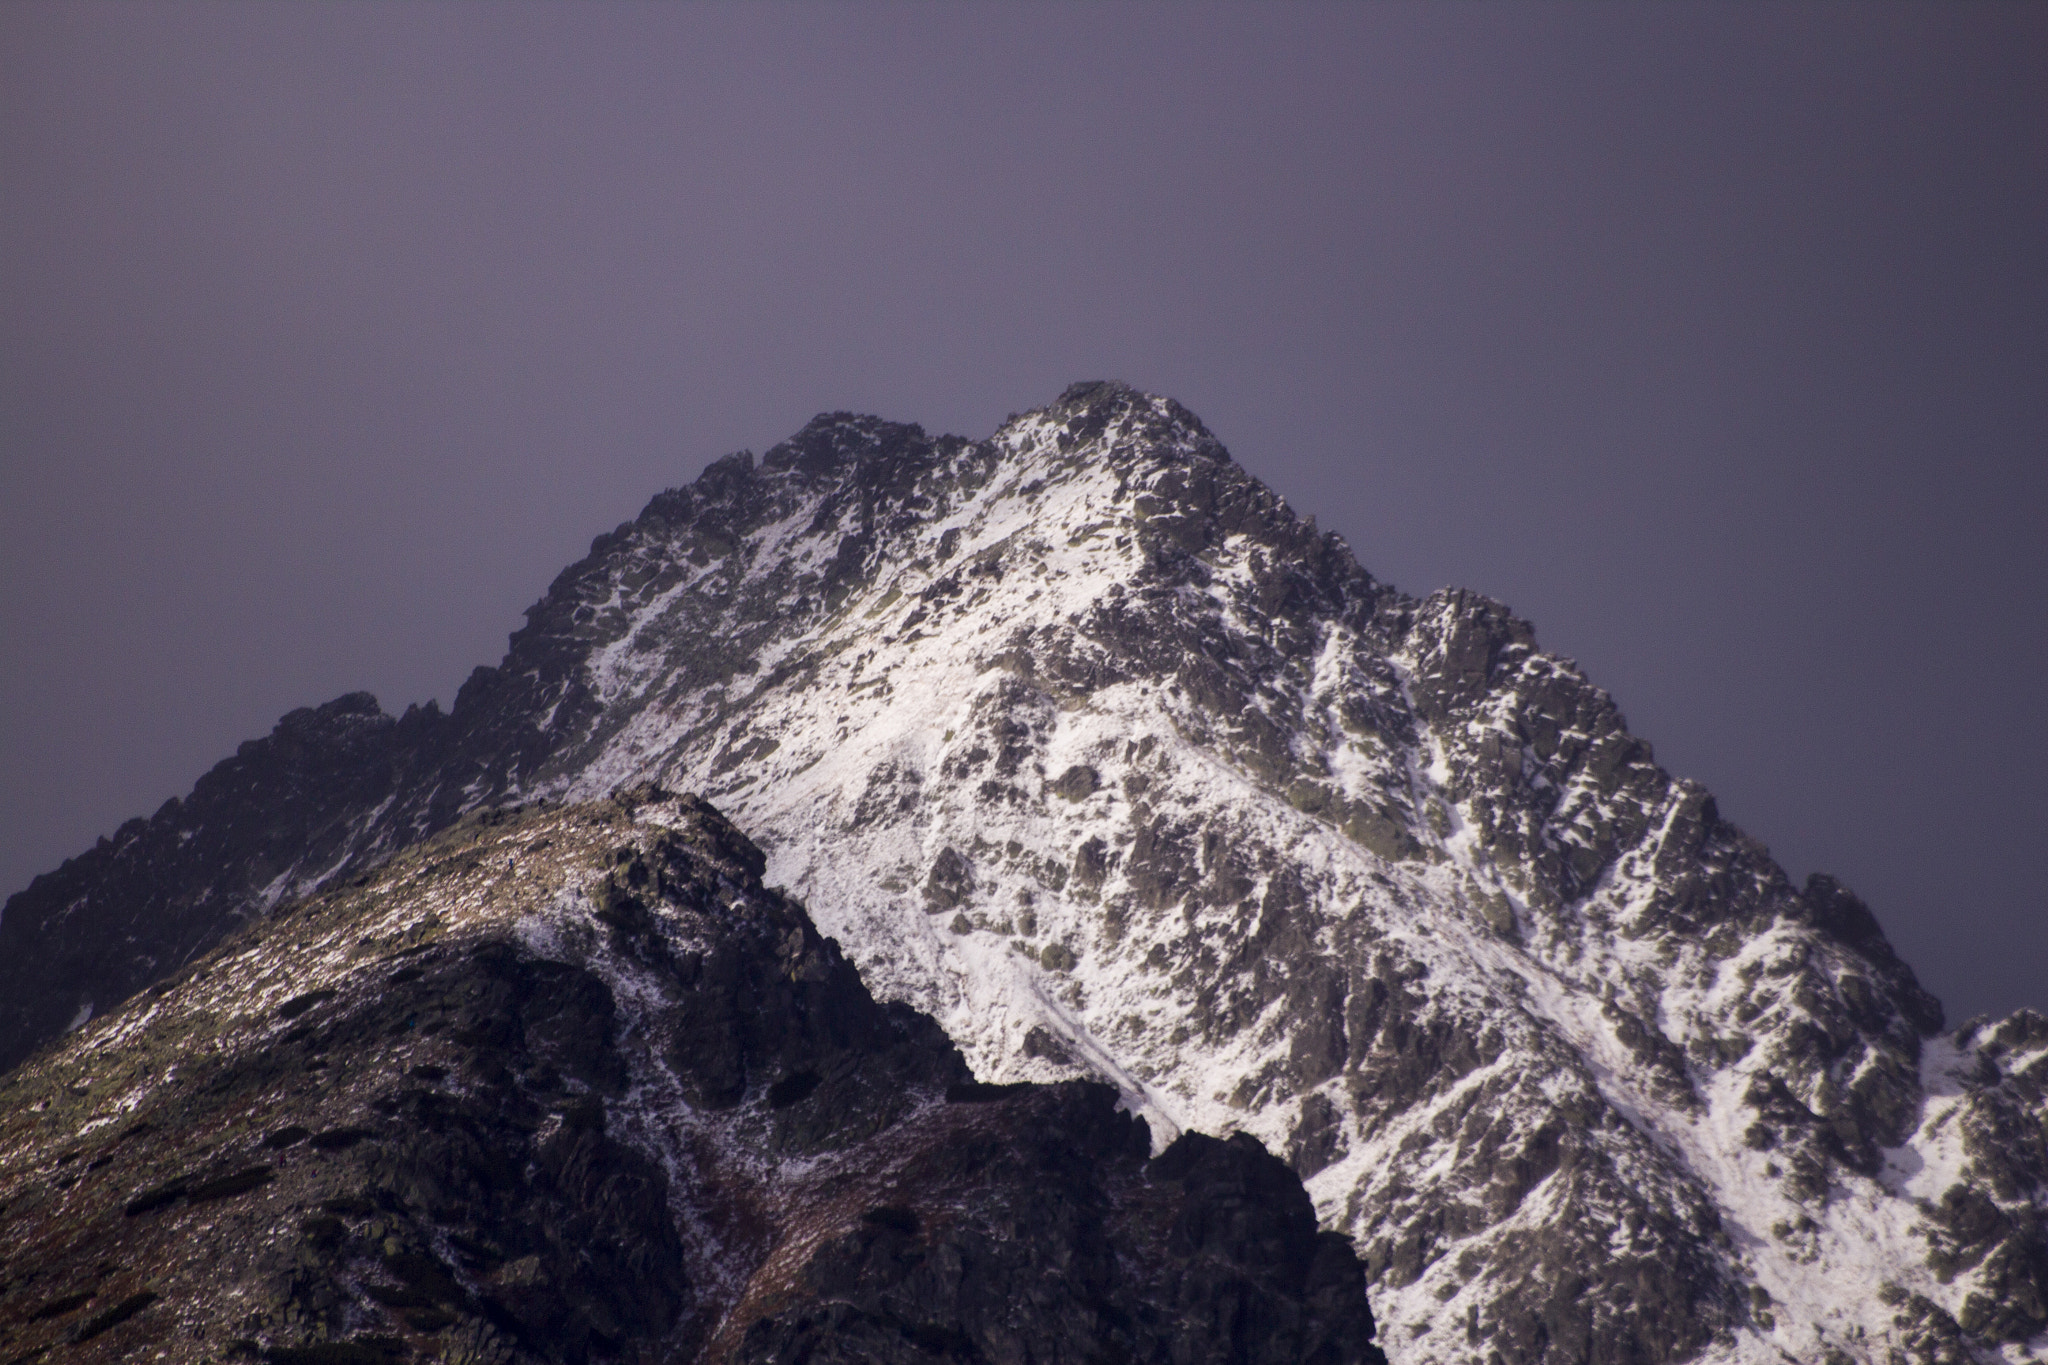 Canon EOS 600D (Rebel EOS T3i / EOS Kiss X5) + Sigma 70-300mm F4-5.6 APO DG Macro sample photo. Tatra mountains photography